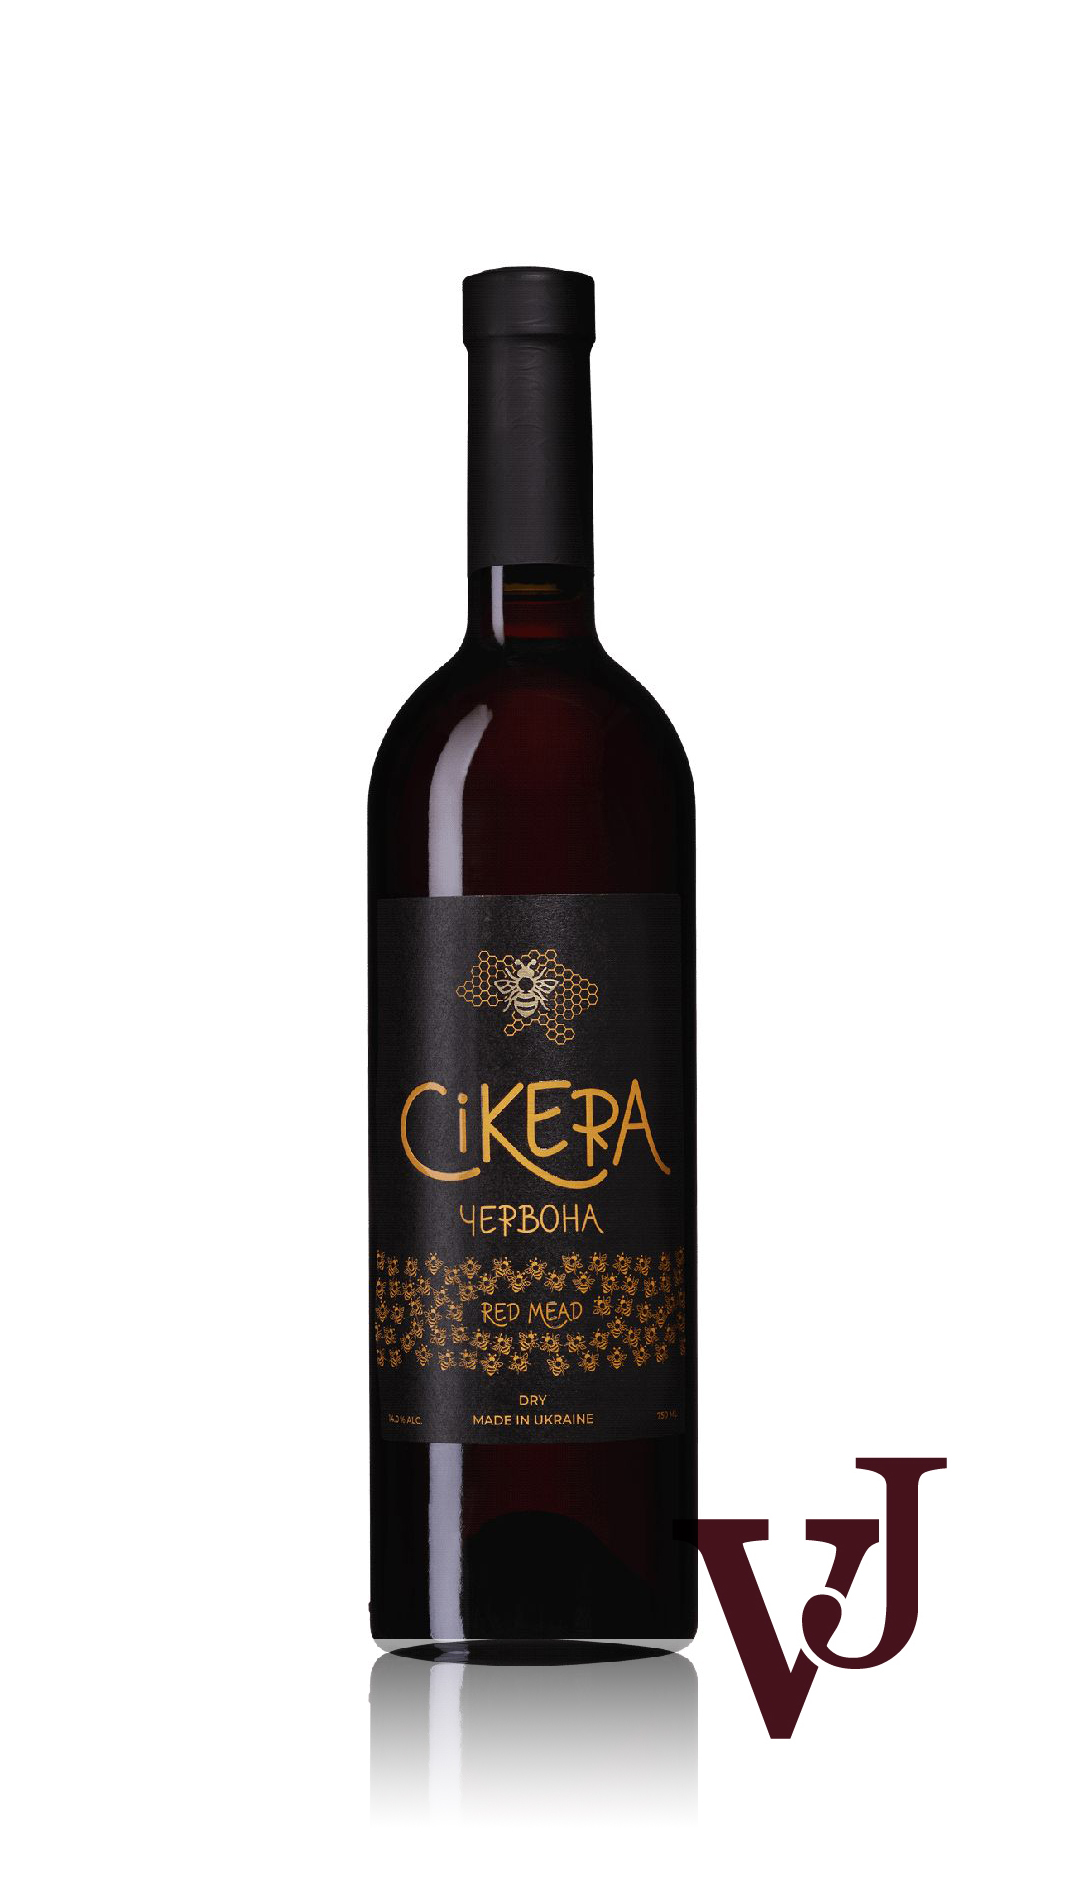 Övrigt Vin - Cikera Rött 2019 artikel nummer 5597501 från producenten LLC Medovyy Spas från Ukraina.